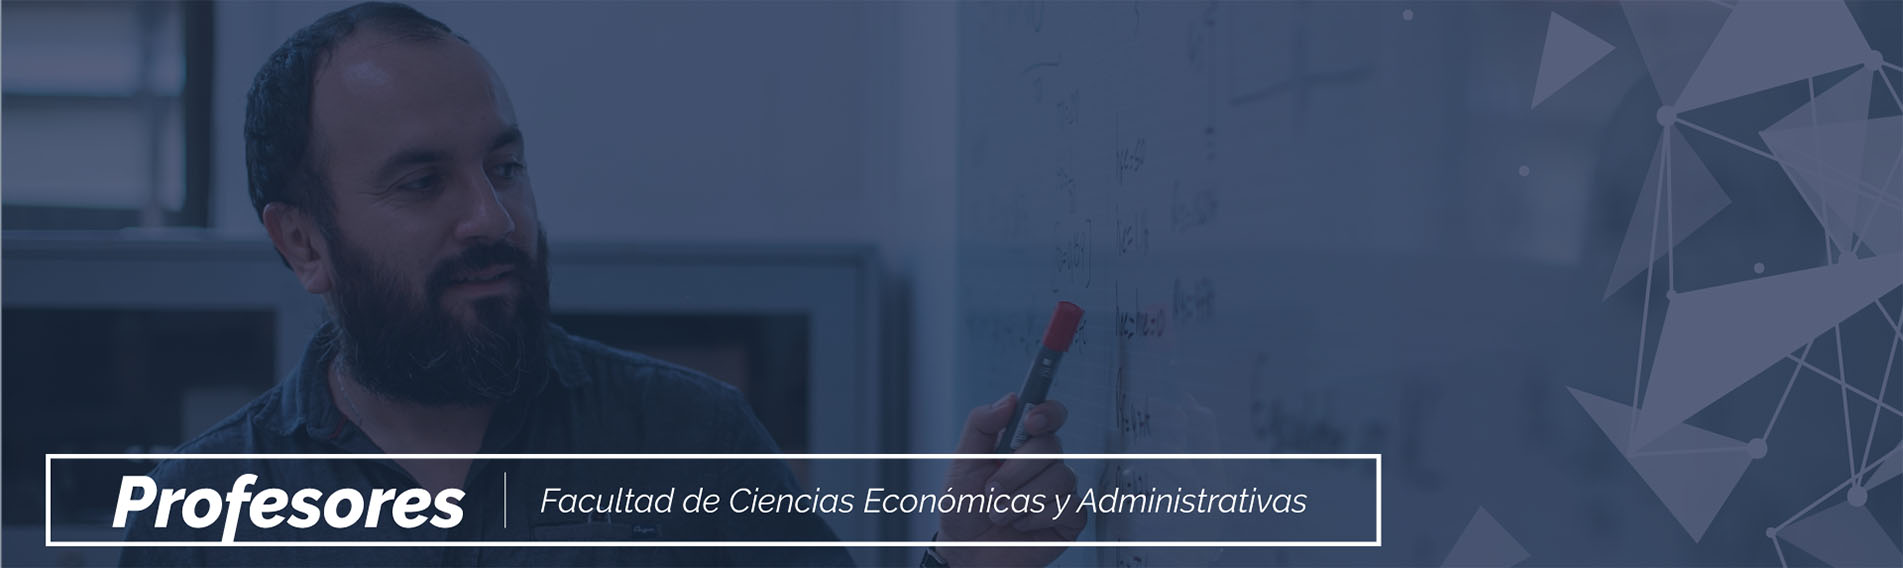 Imagen de cabecera para el sitio web de profesores de la Facultad de Ciencias Económicas y Administrativas